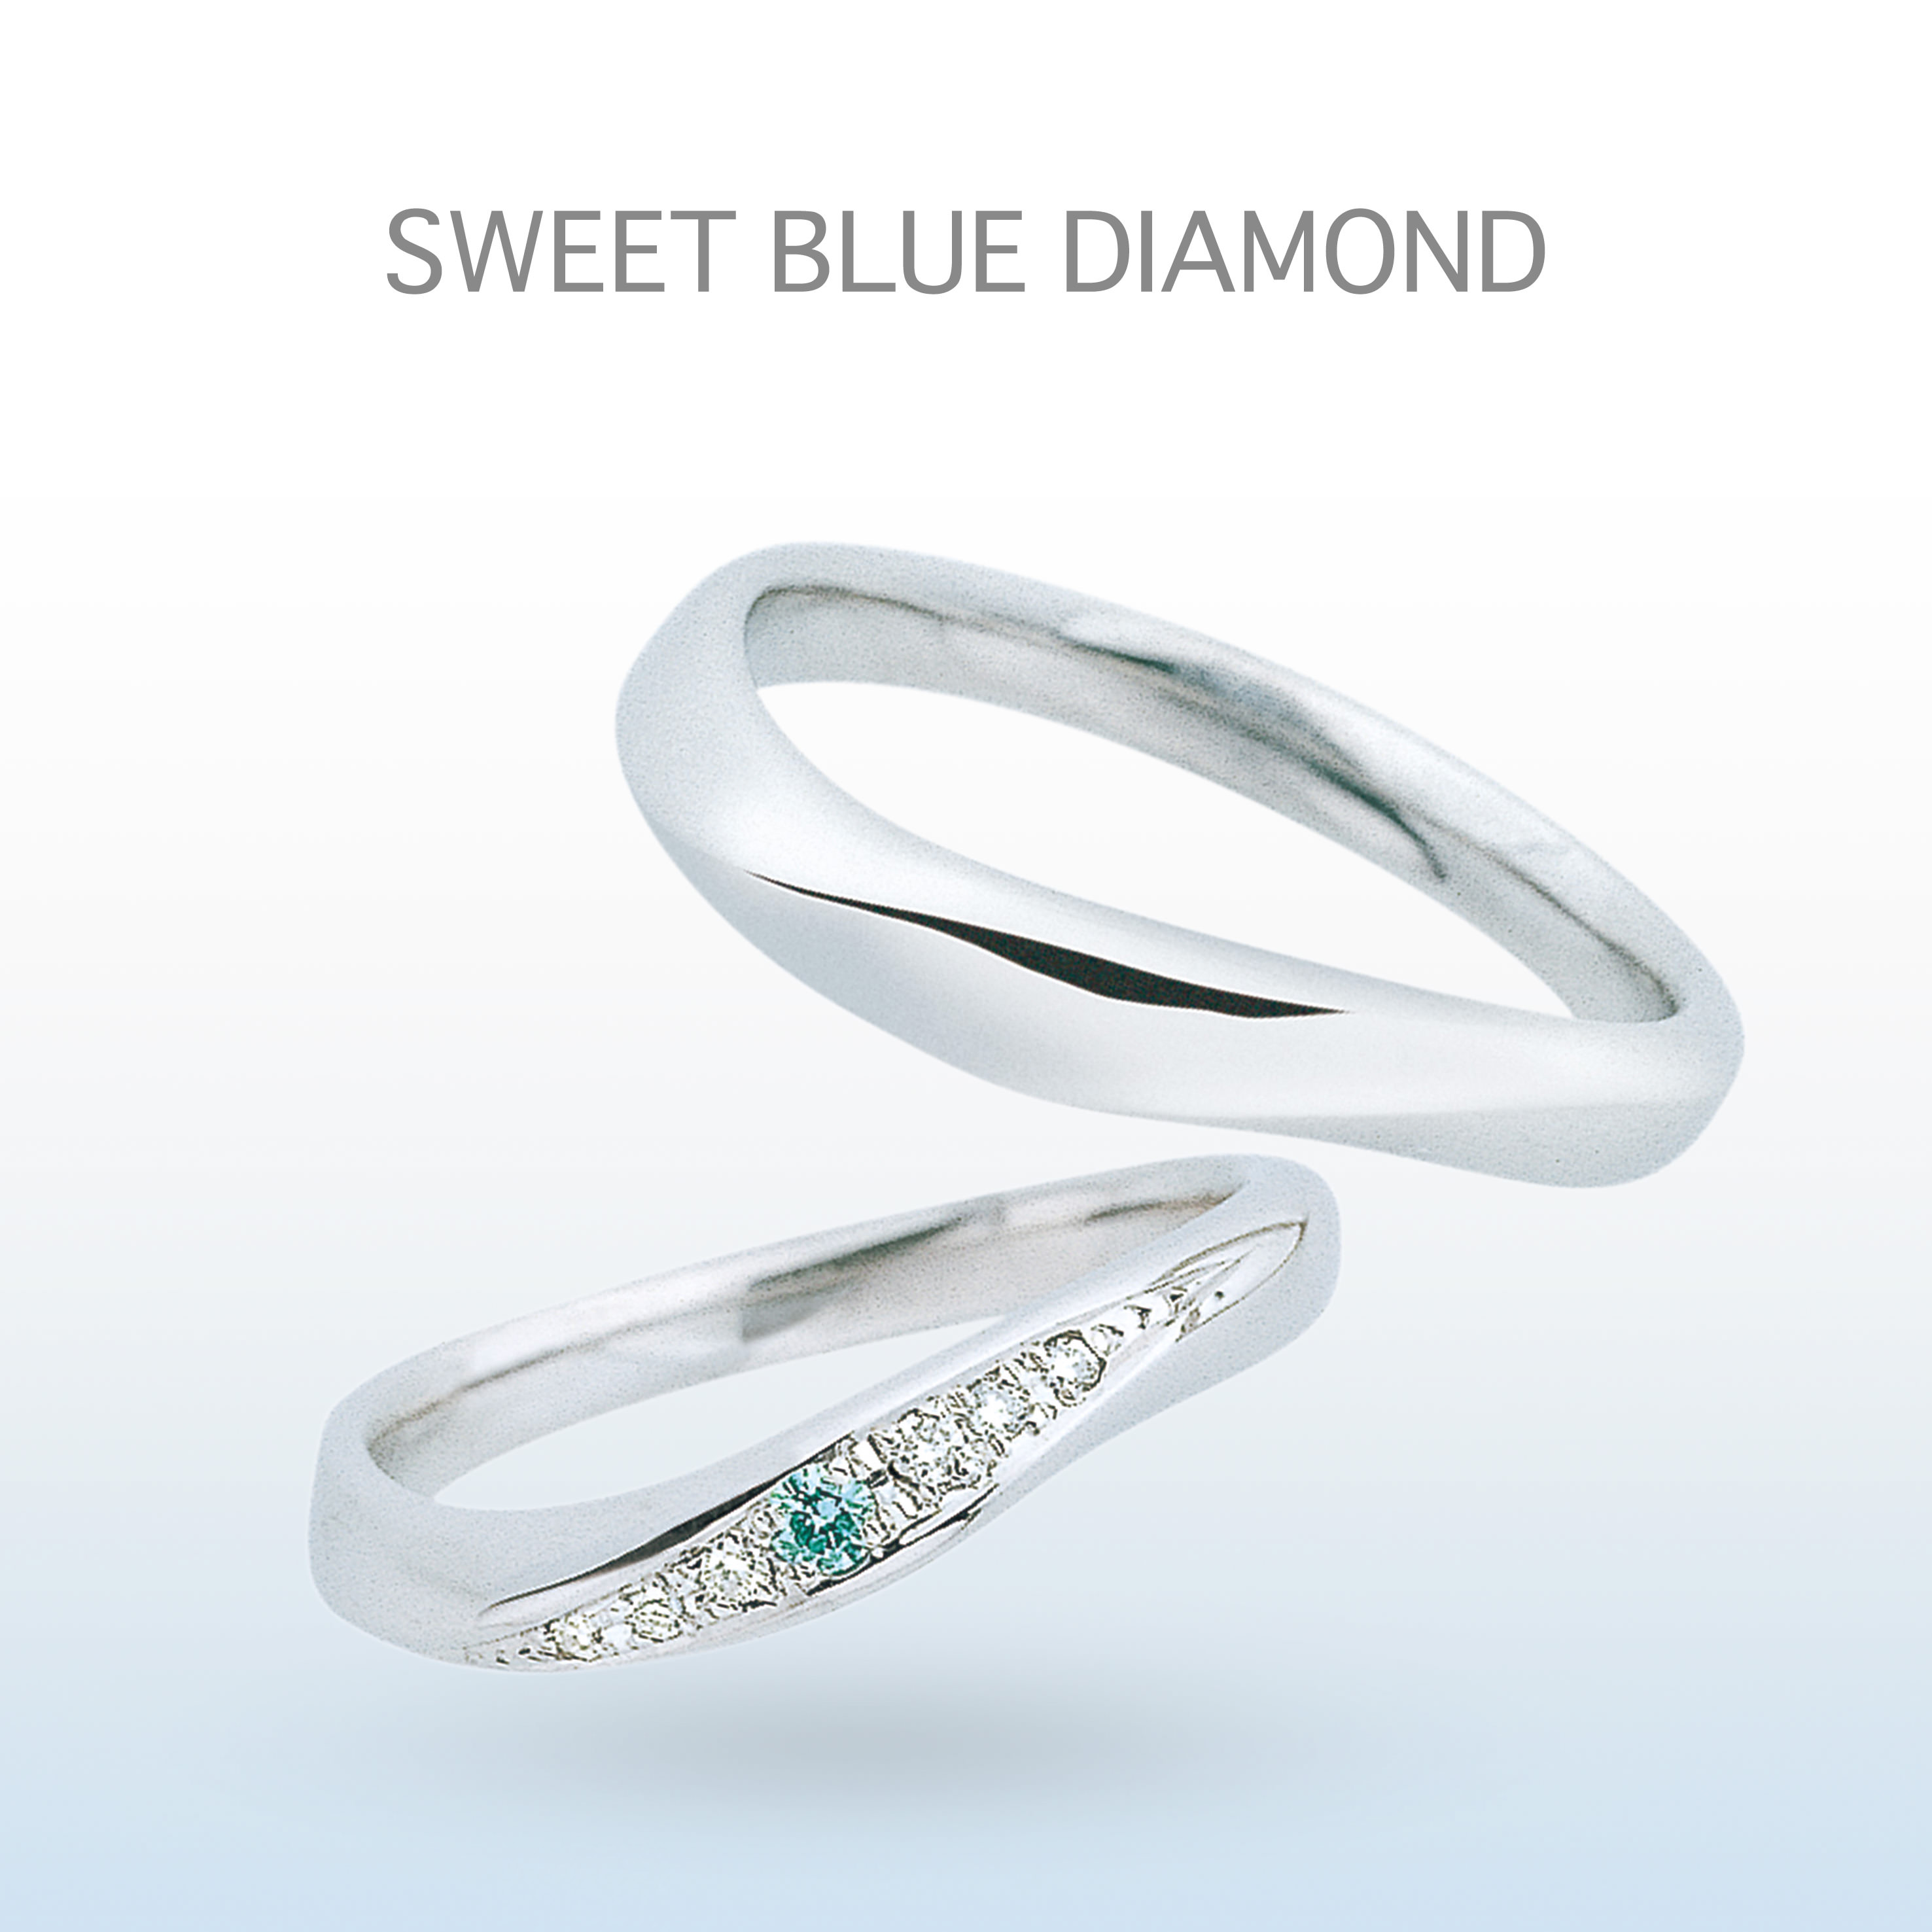 人気の斜めにダイヤモンドが留められたデザイン。ブルーのダイヤモンドが爽やかな印象に。